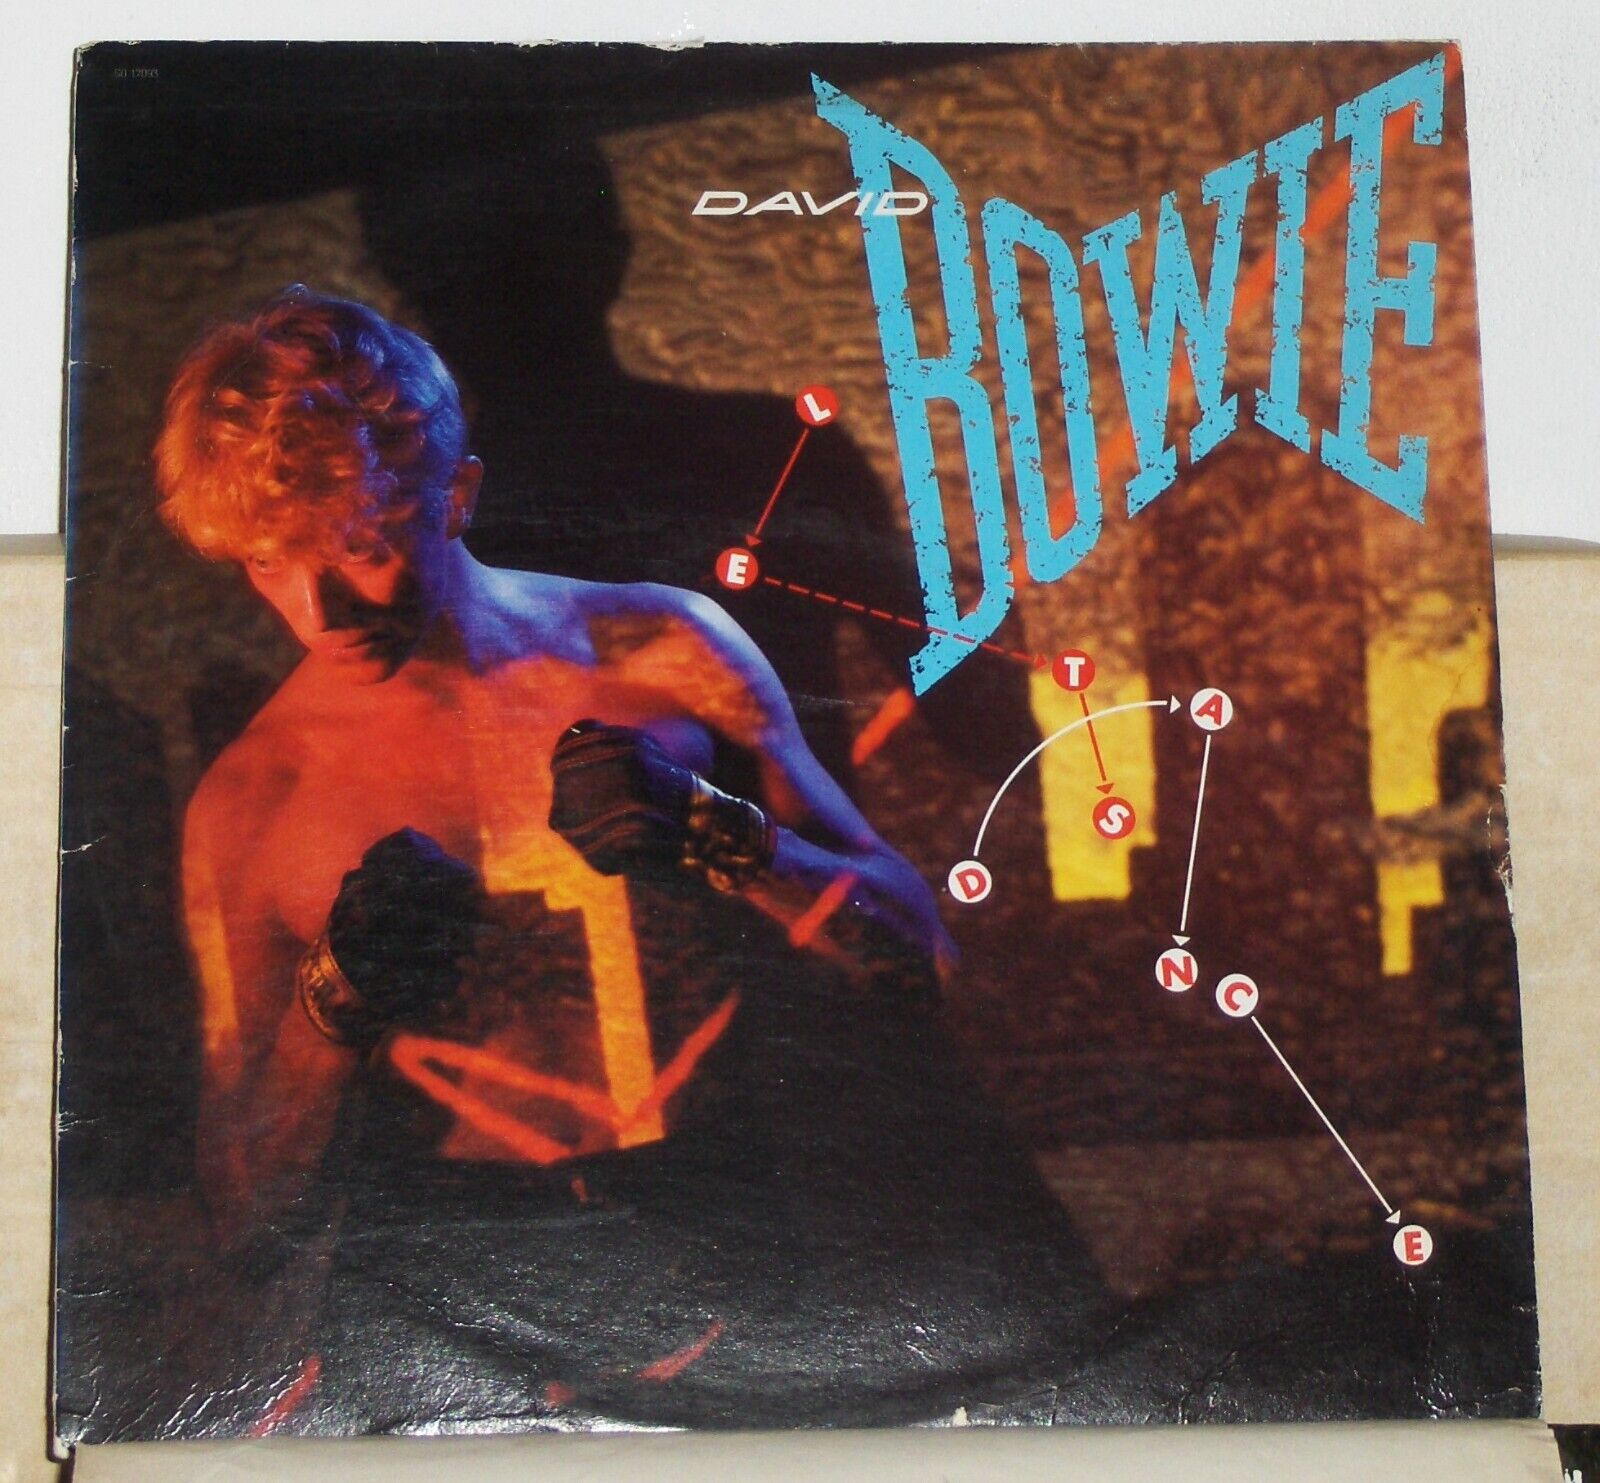 David Bowie – Let's Dance - 1983 Vinyl LP Record Album